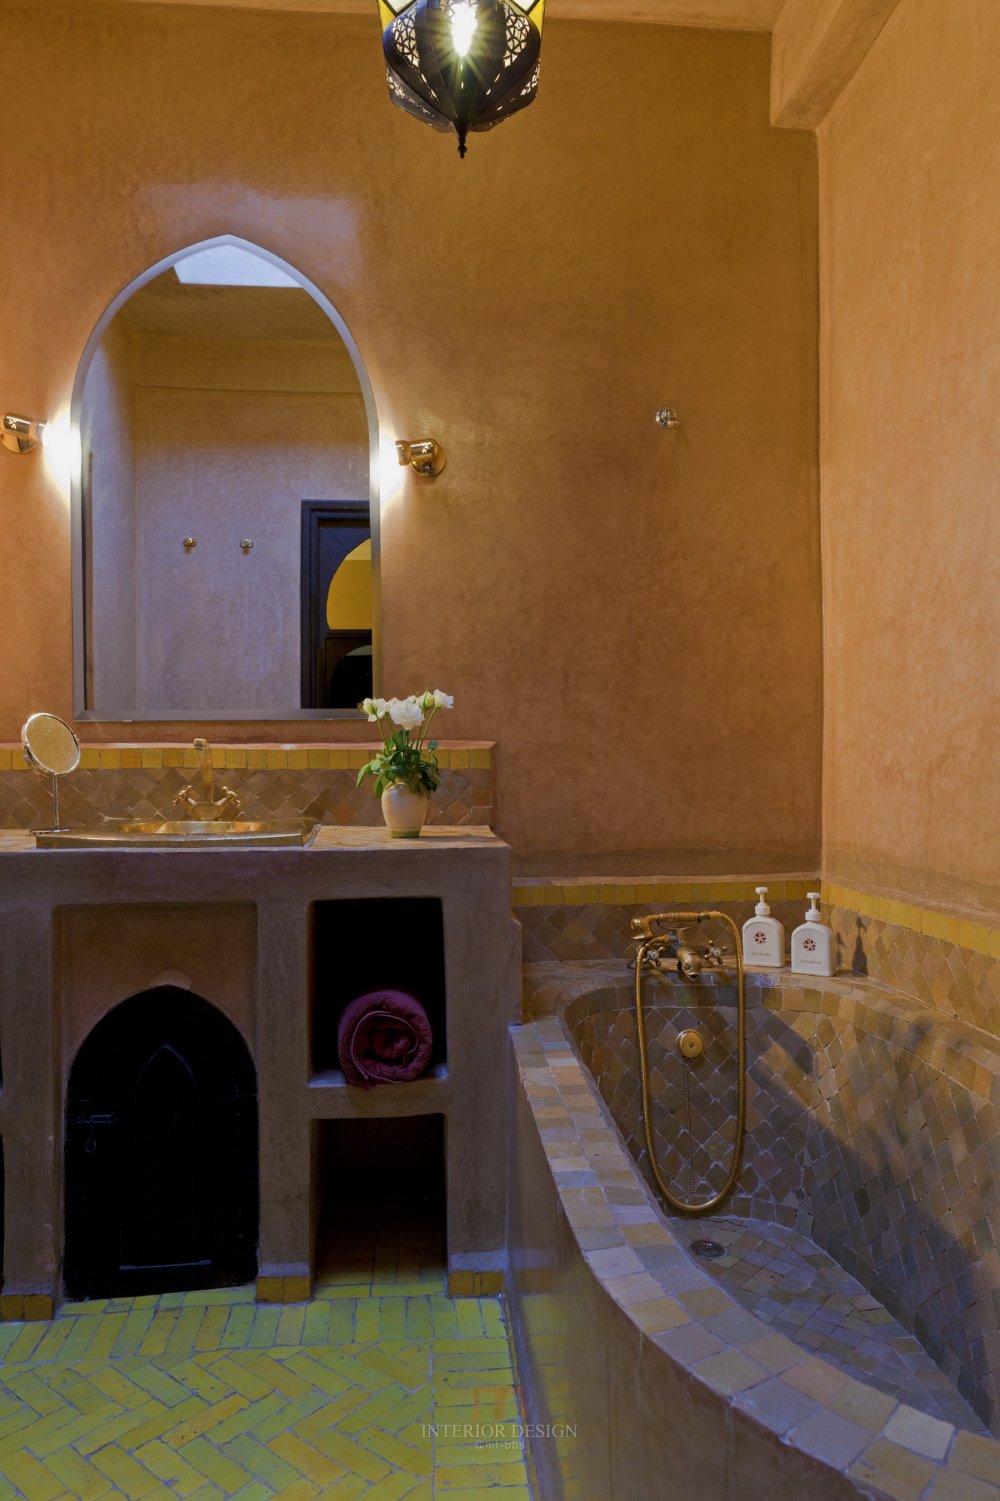 摩洛哥马拉喀什悦椿度假酒店 Angsana Riads Collection Morocco_33551064-H1-Zaouia_PG_1010_Bathroom3_9431.jpg